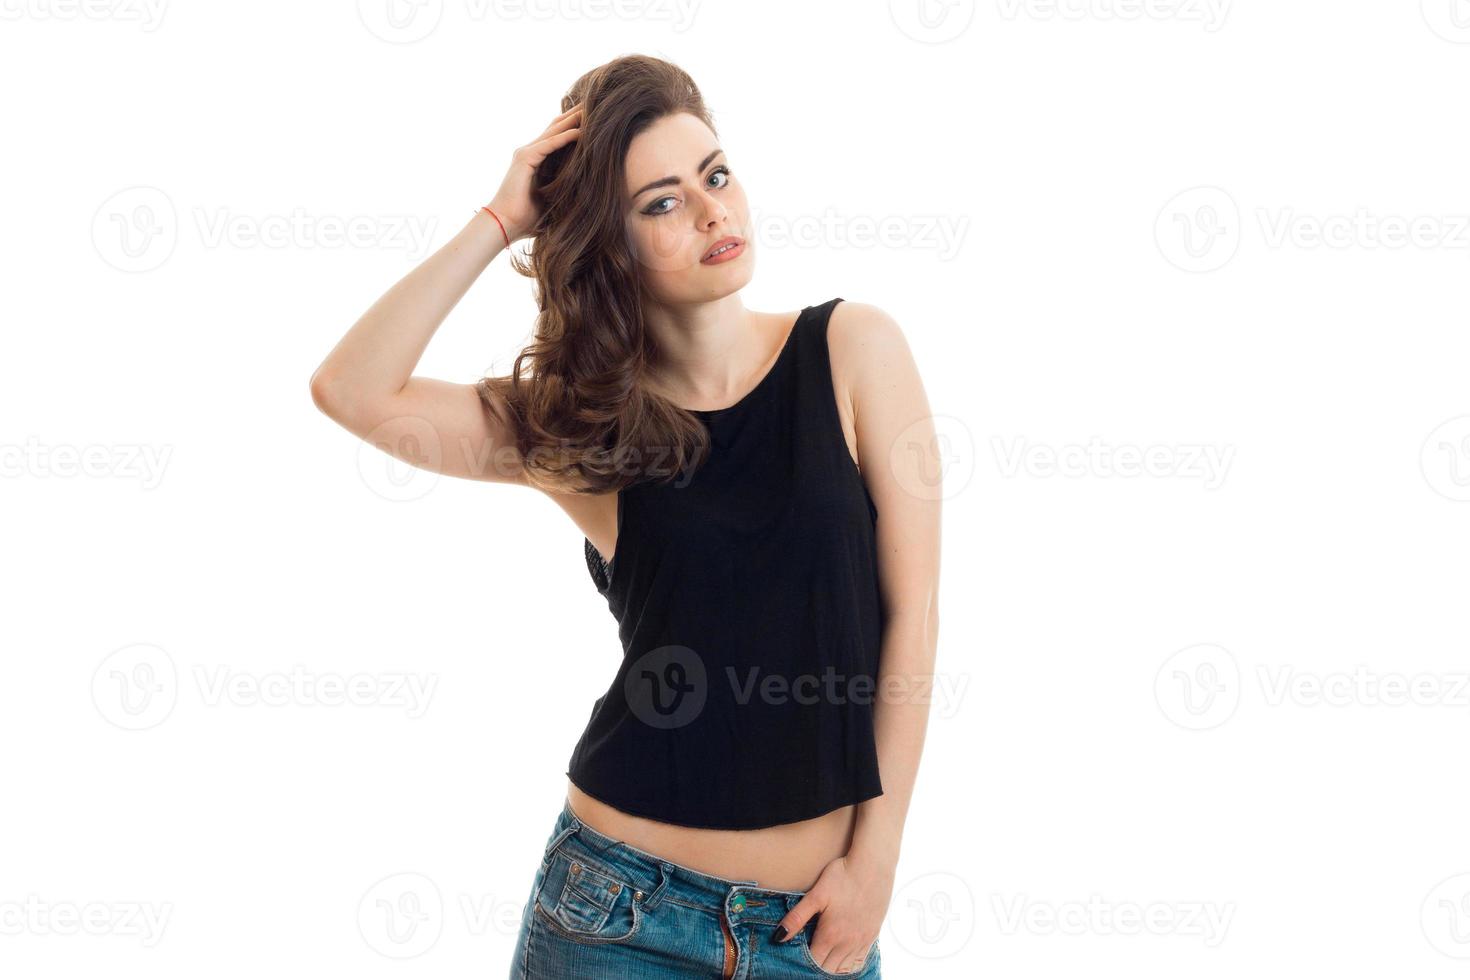 incrível jovem morena em camiseta preta olha para a câmera e segura o cabelo da mão foto